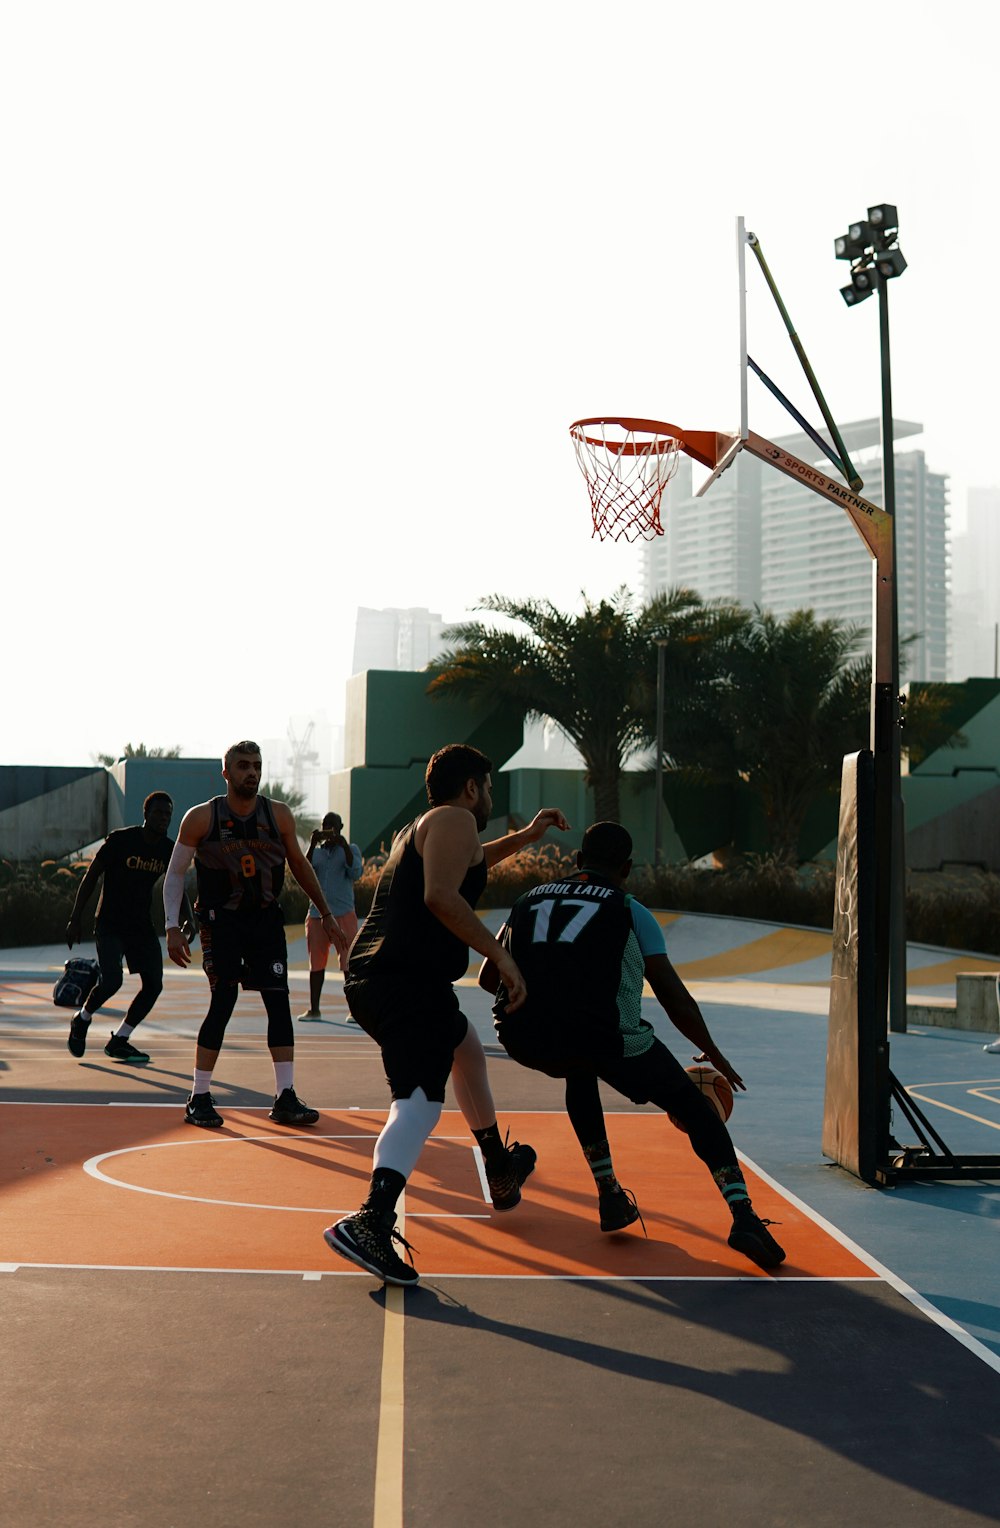 Personas jugando al baloncesto durante el día